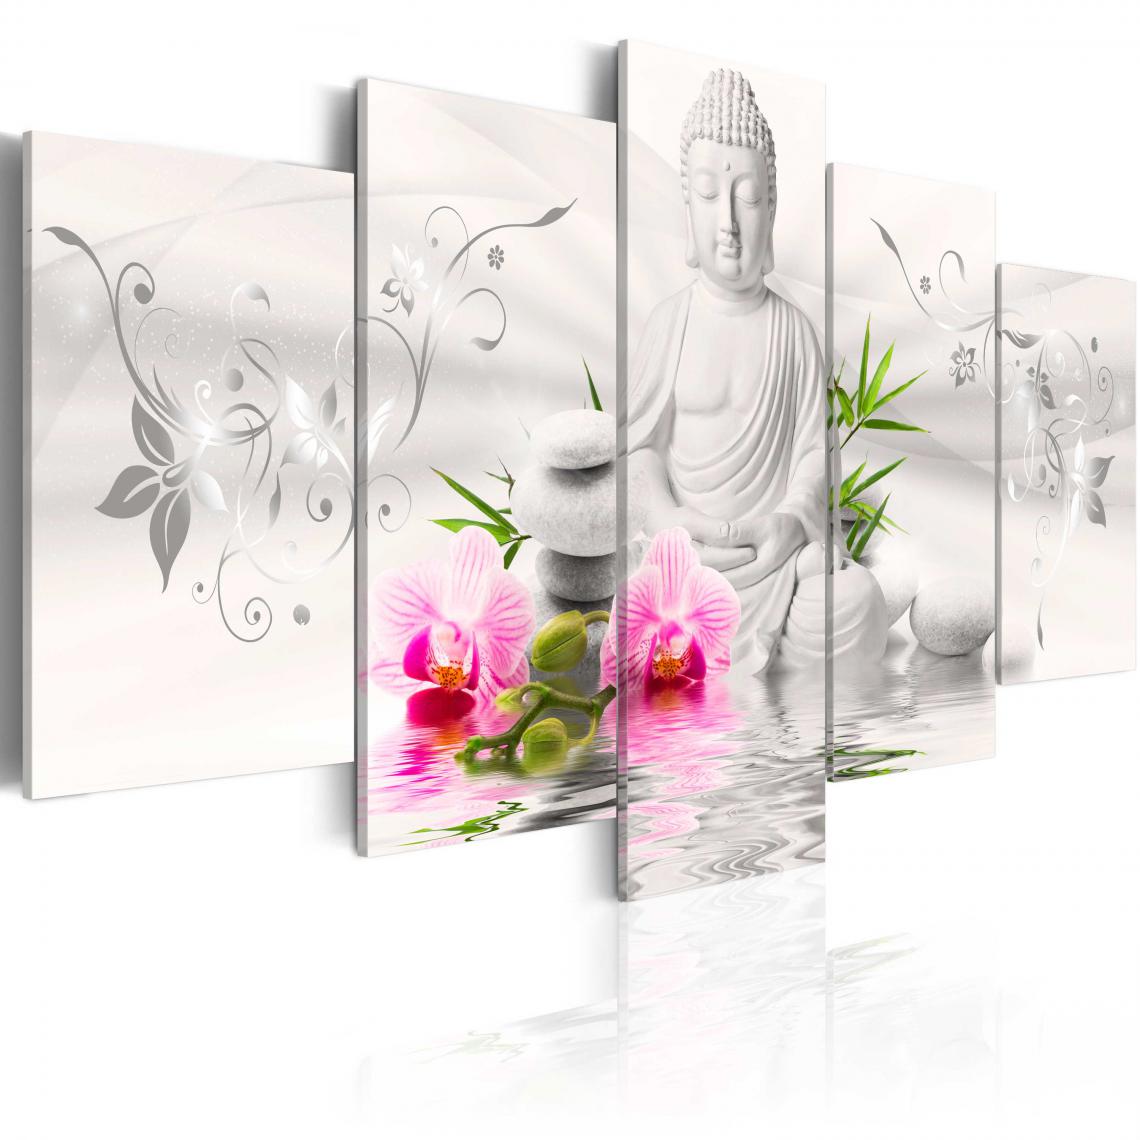 Decoshop26 - Tableau sur toile en 5 panneaux décoration murale image imprimée cadre en bois à suspendre Bouddha perle 100x50 cm 11_0008984 - Tableaux, peintures